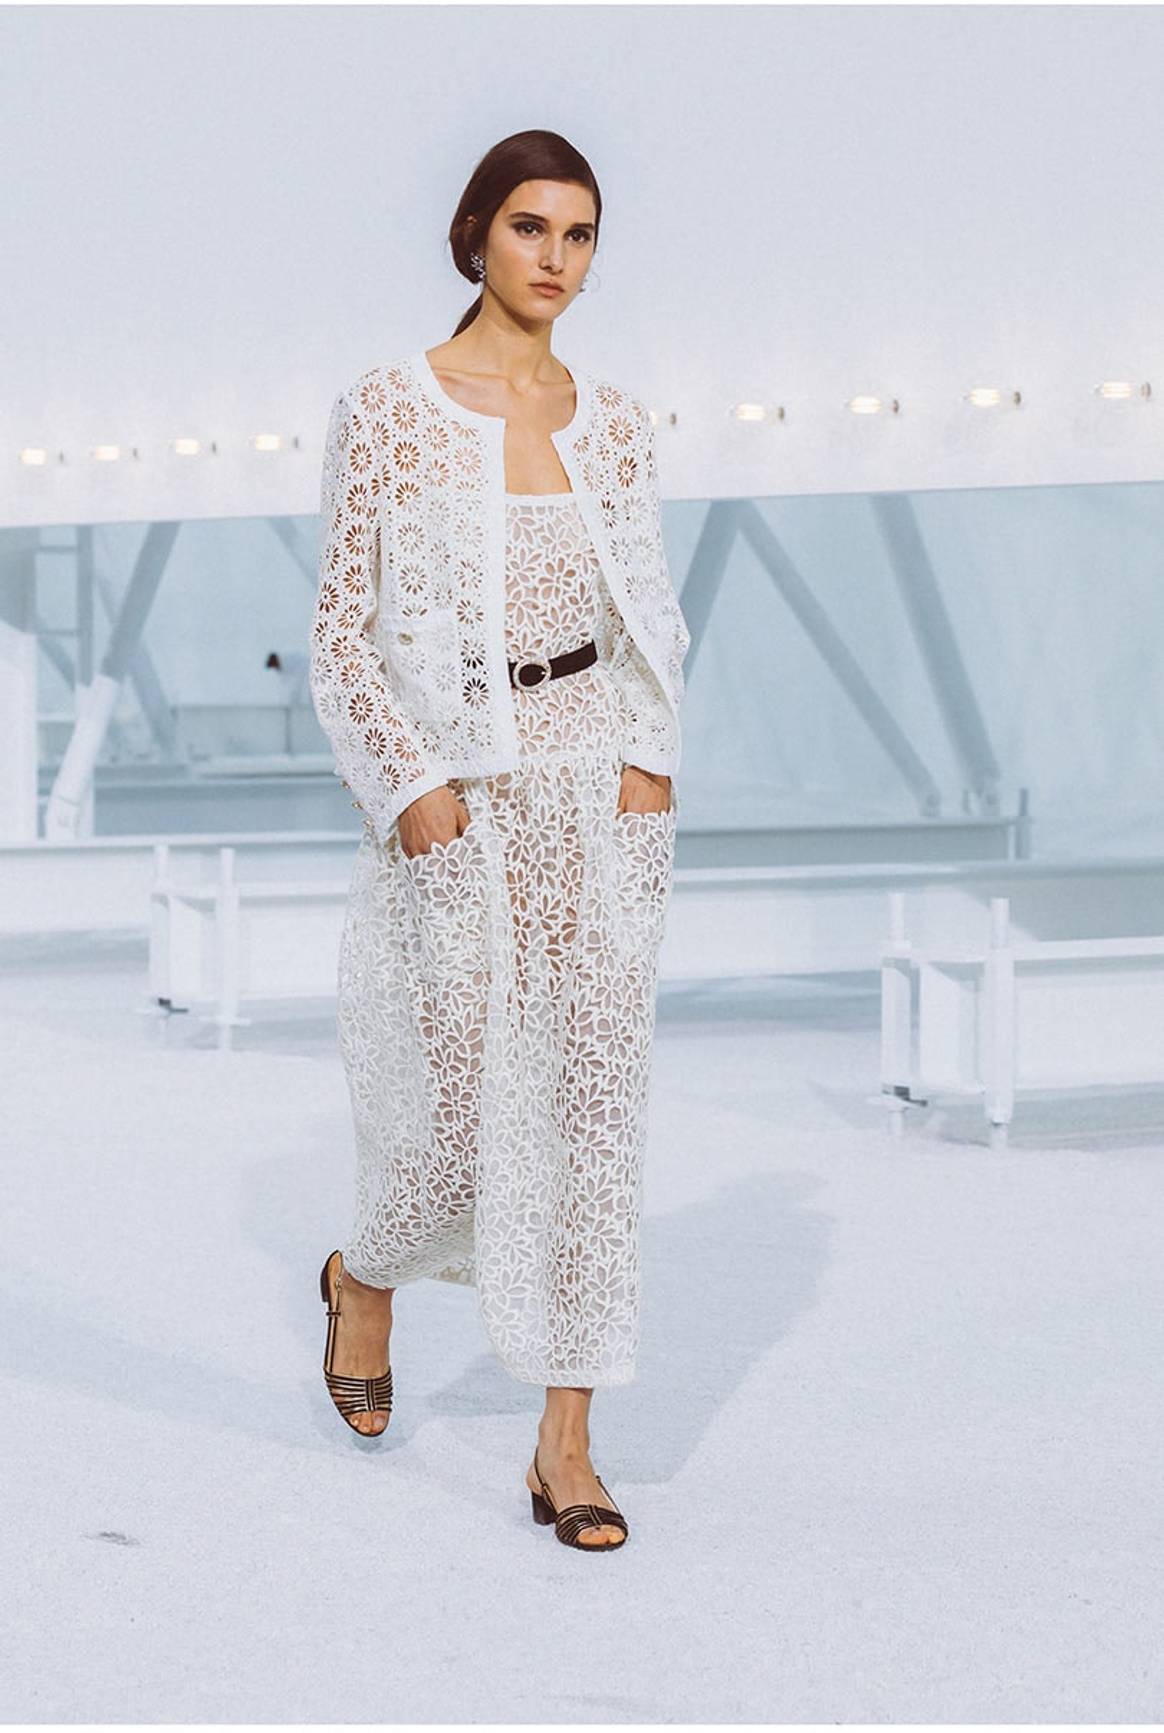 De Romy Schneider a Jeanne Moreau: Chanel reivindica a sus “musas” del séptimo arte en su colección Primavera/Verano 2021